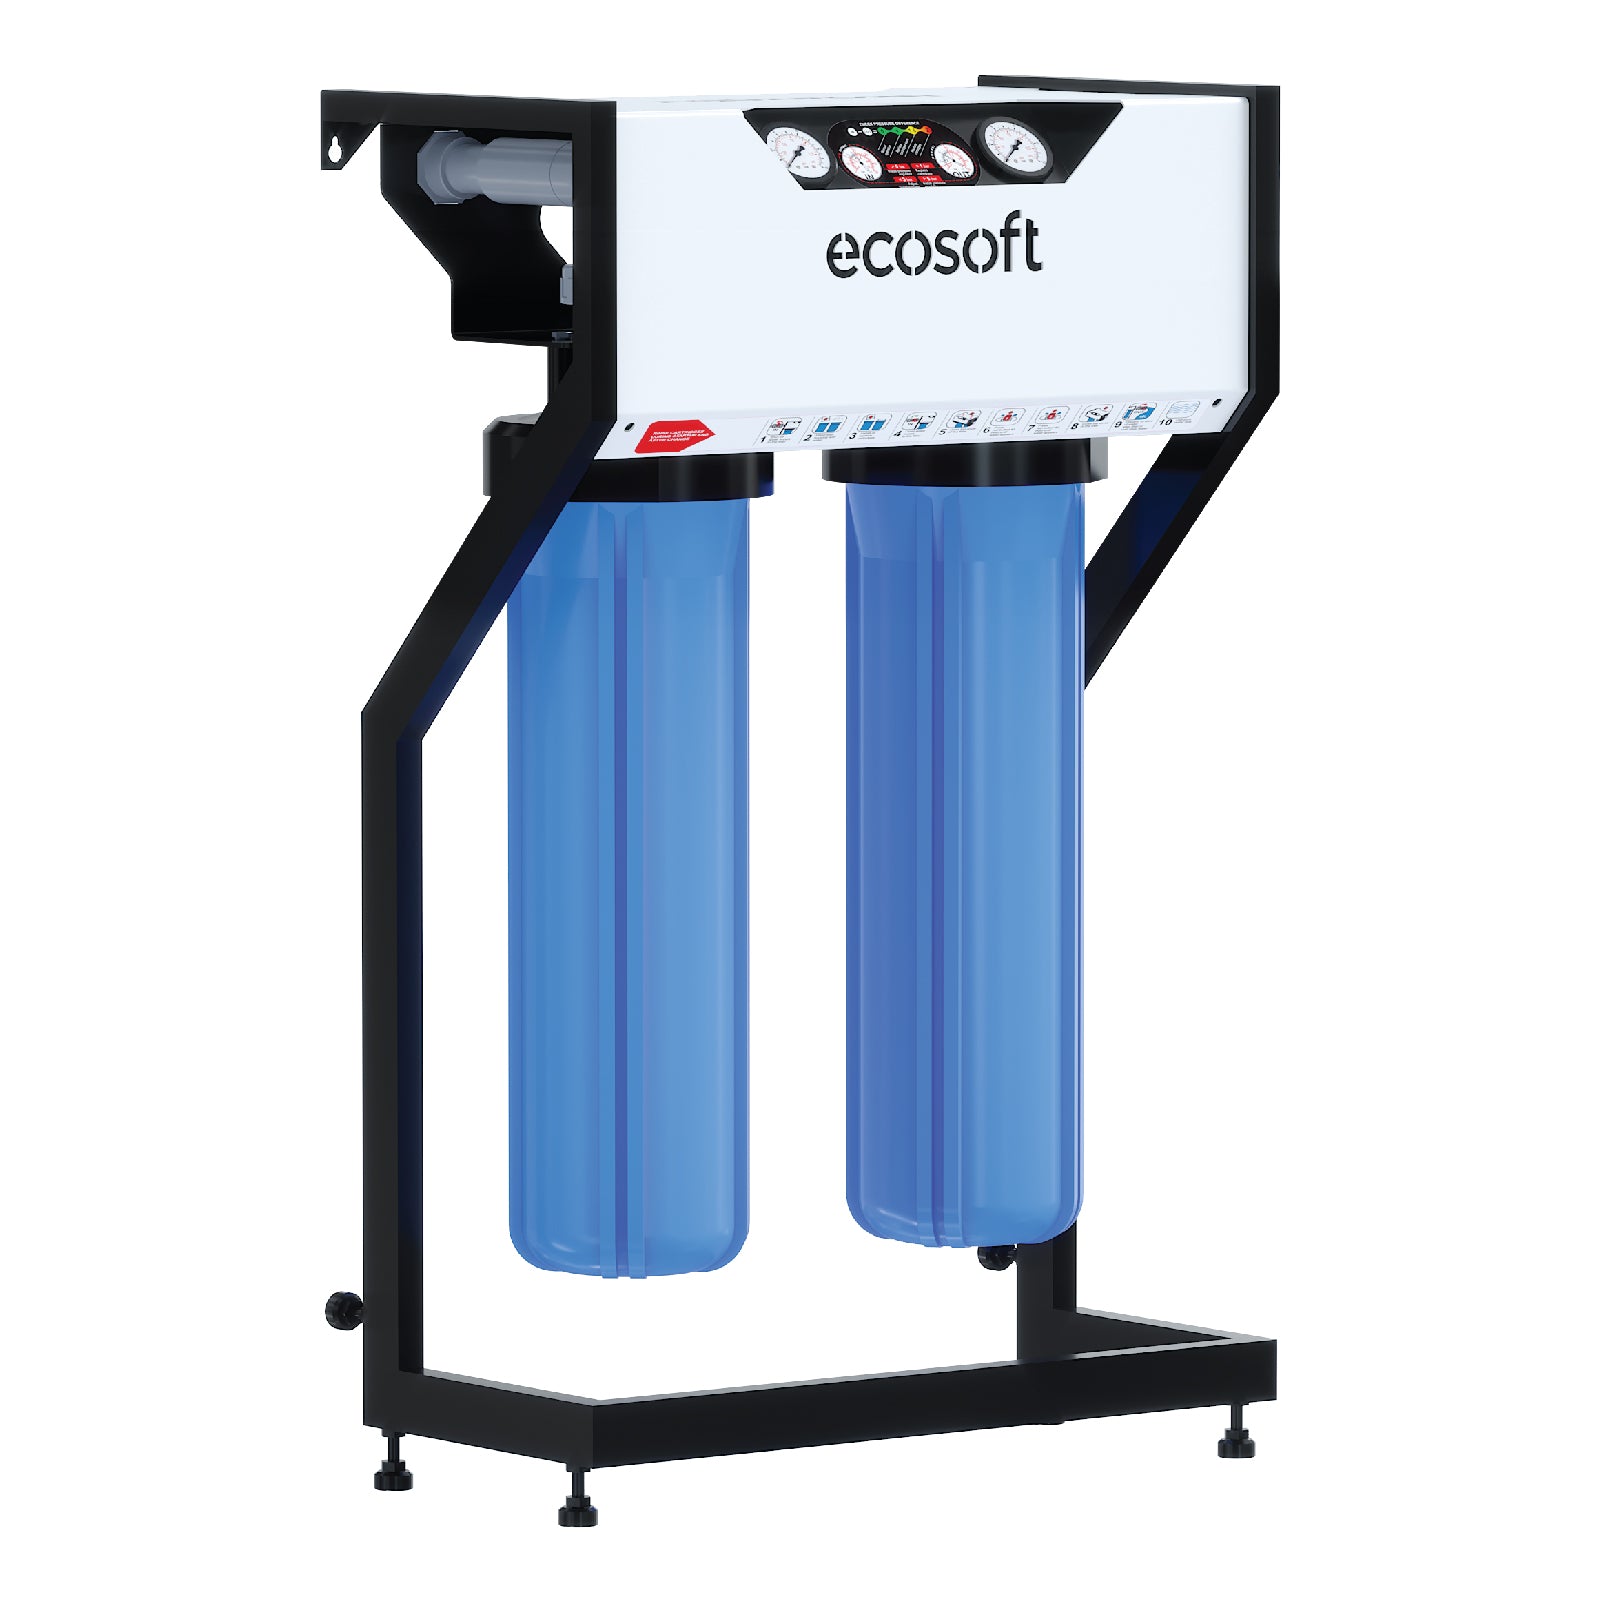 Wasserfilter für Geschirrspüler und Waschmaschinen. Ecosoft